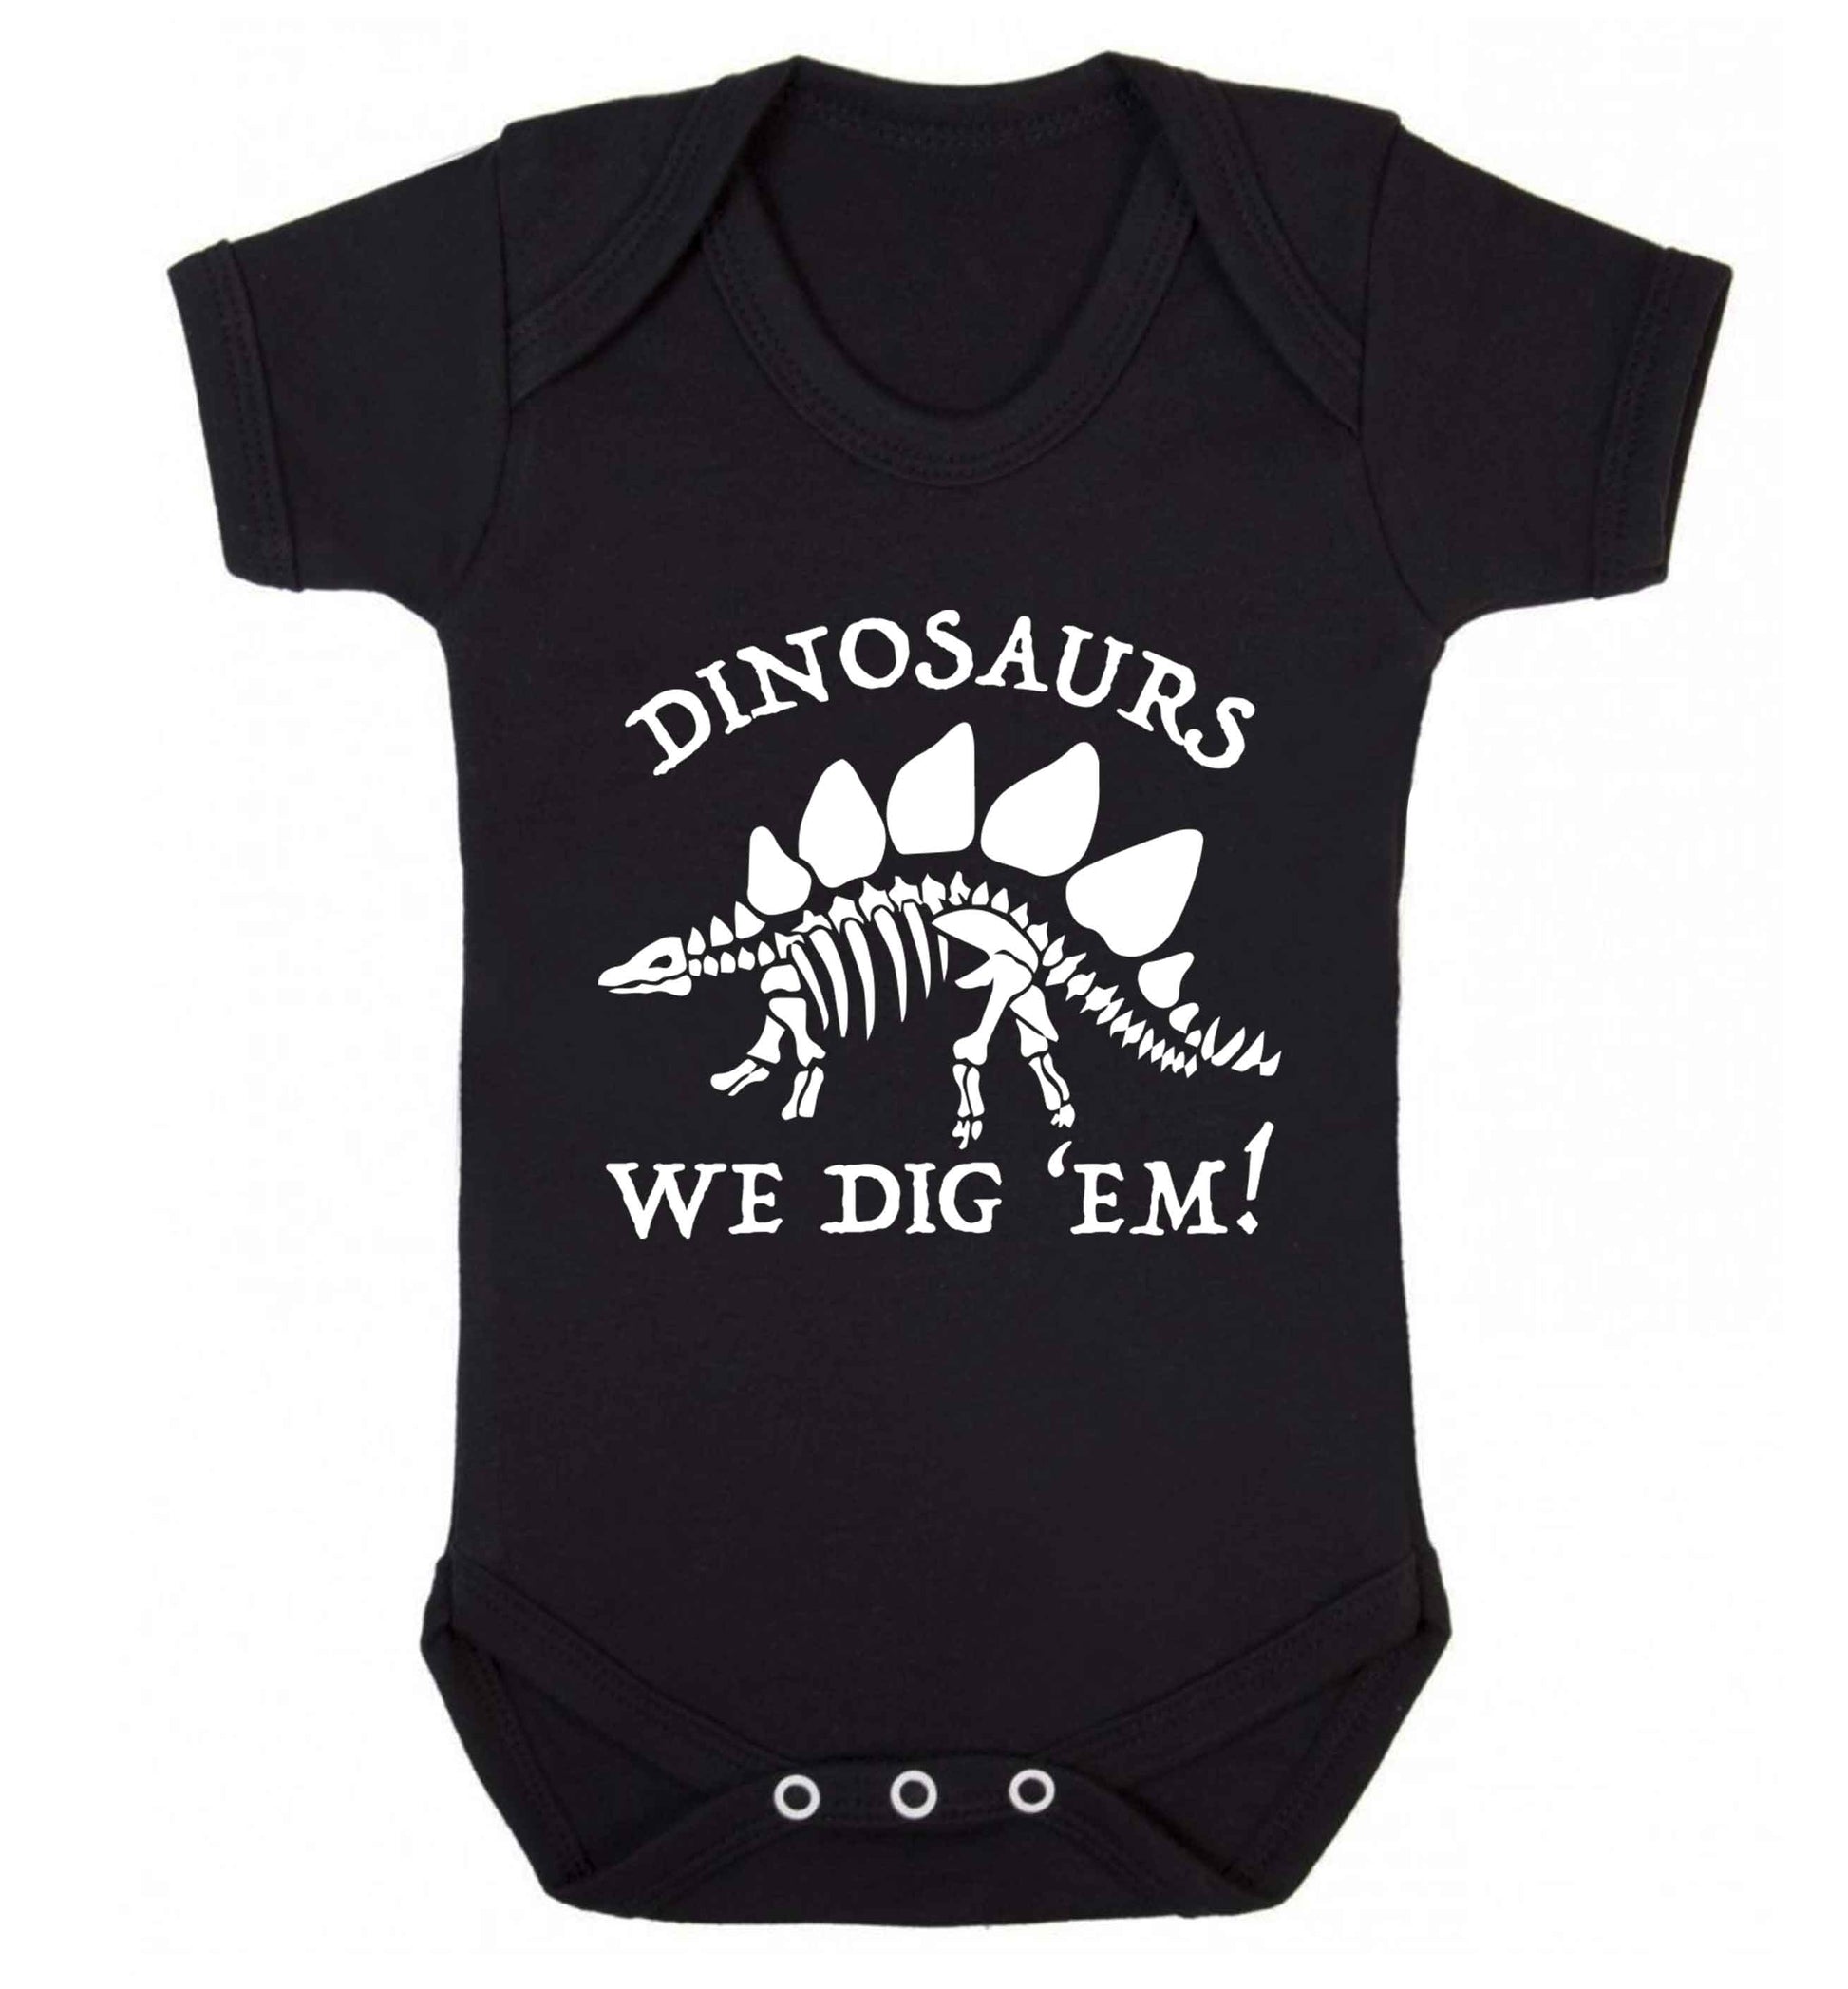 Dinosaurs we dig 'em! Baby Vest black 18-24 months